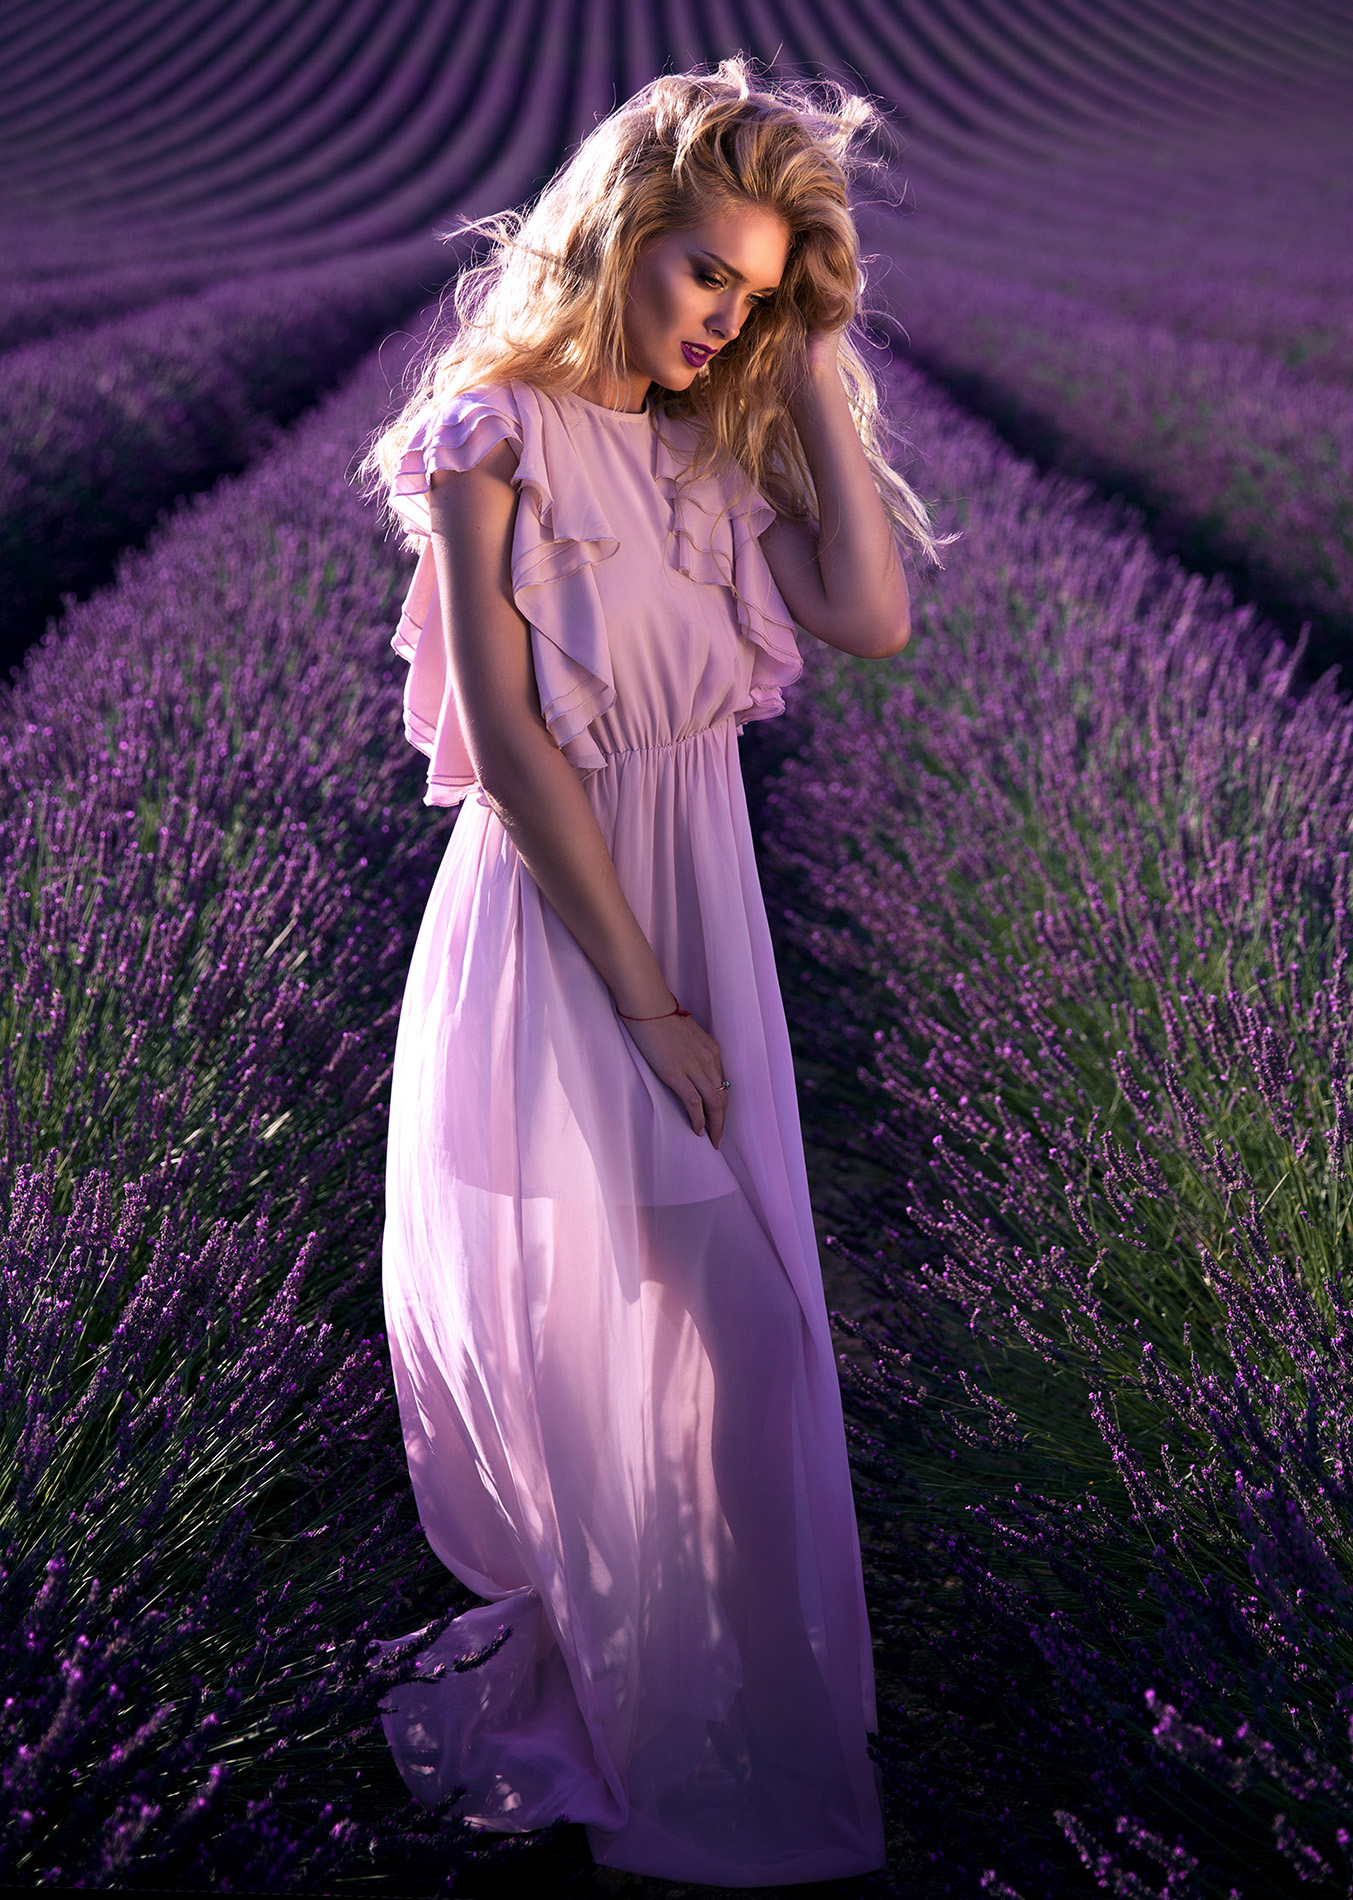 Фото девушки в платье в поле